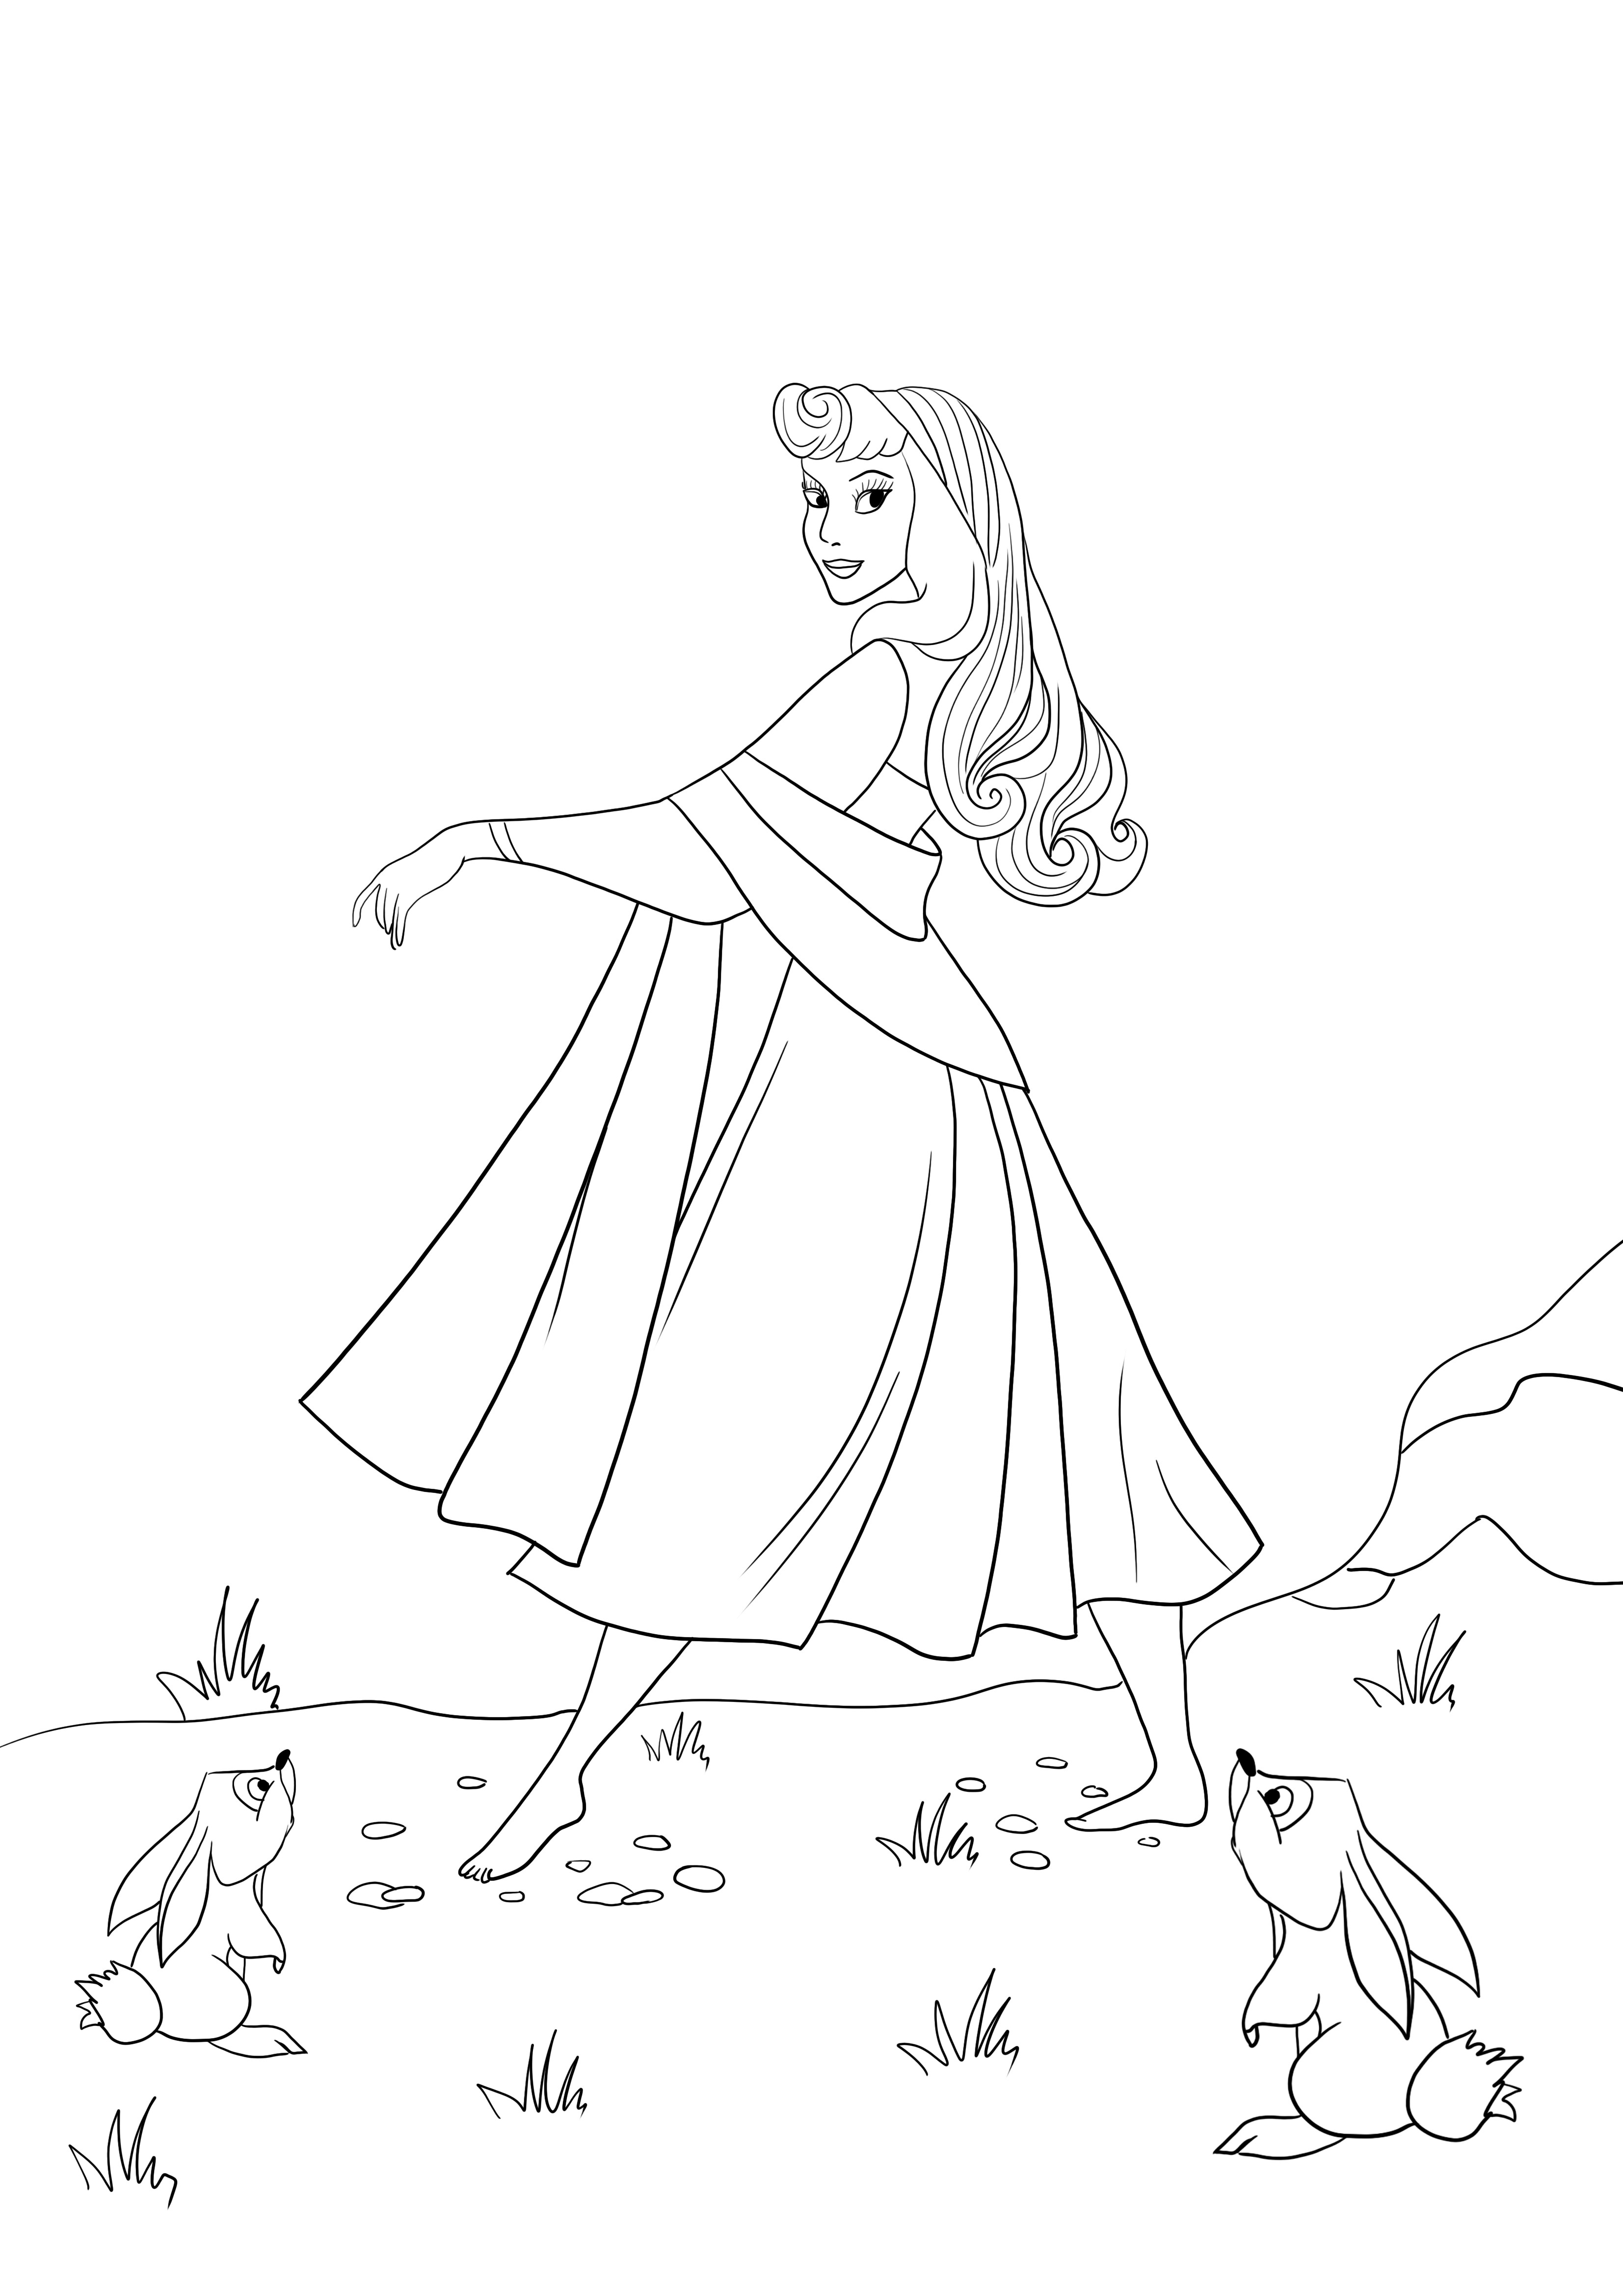 Immagine da colorare di bella principessa Aurora per il download gratuito